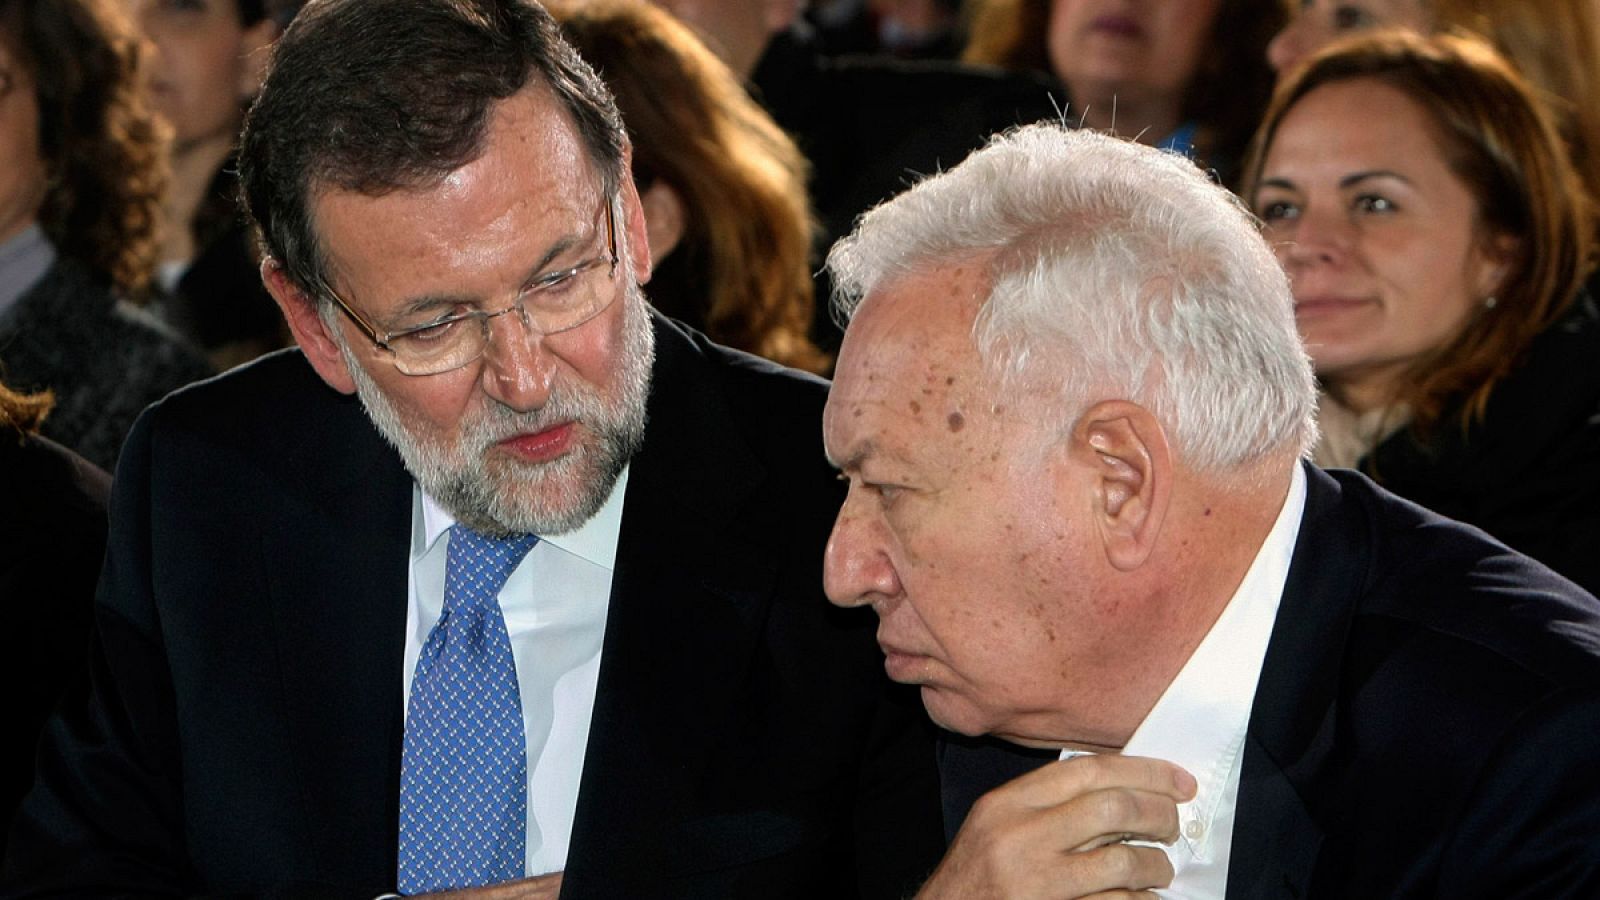 El presidente del Gobierno, Mariano Rajoy, junto al ministro de Exteriores, José Manuel García-Margallo, en el mitin del PP celebrado en Orihuela, Alicante.